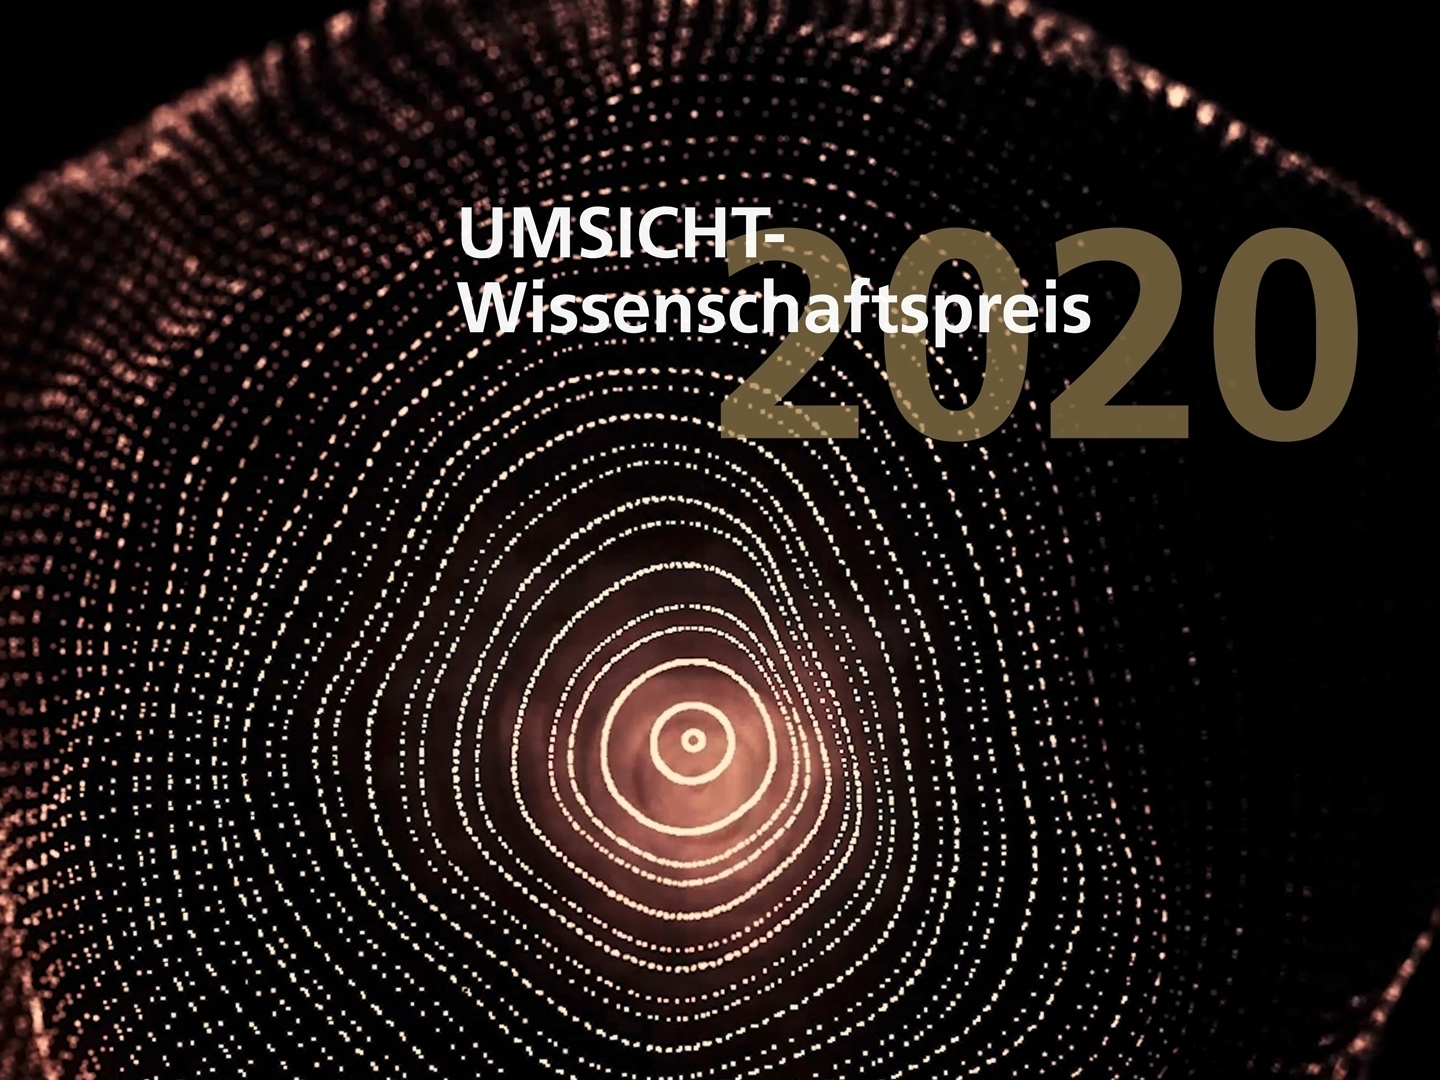 Der UMSICHT-Wissenschaftspreis 2020 wird erstmalig virtuell verliehen.